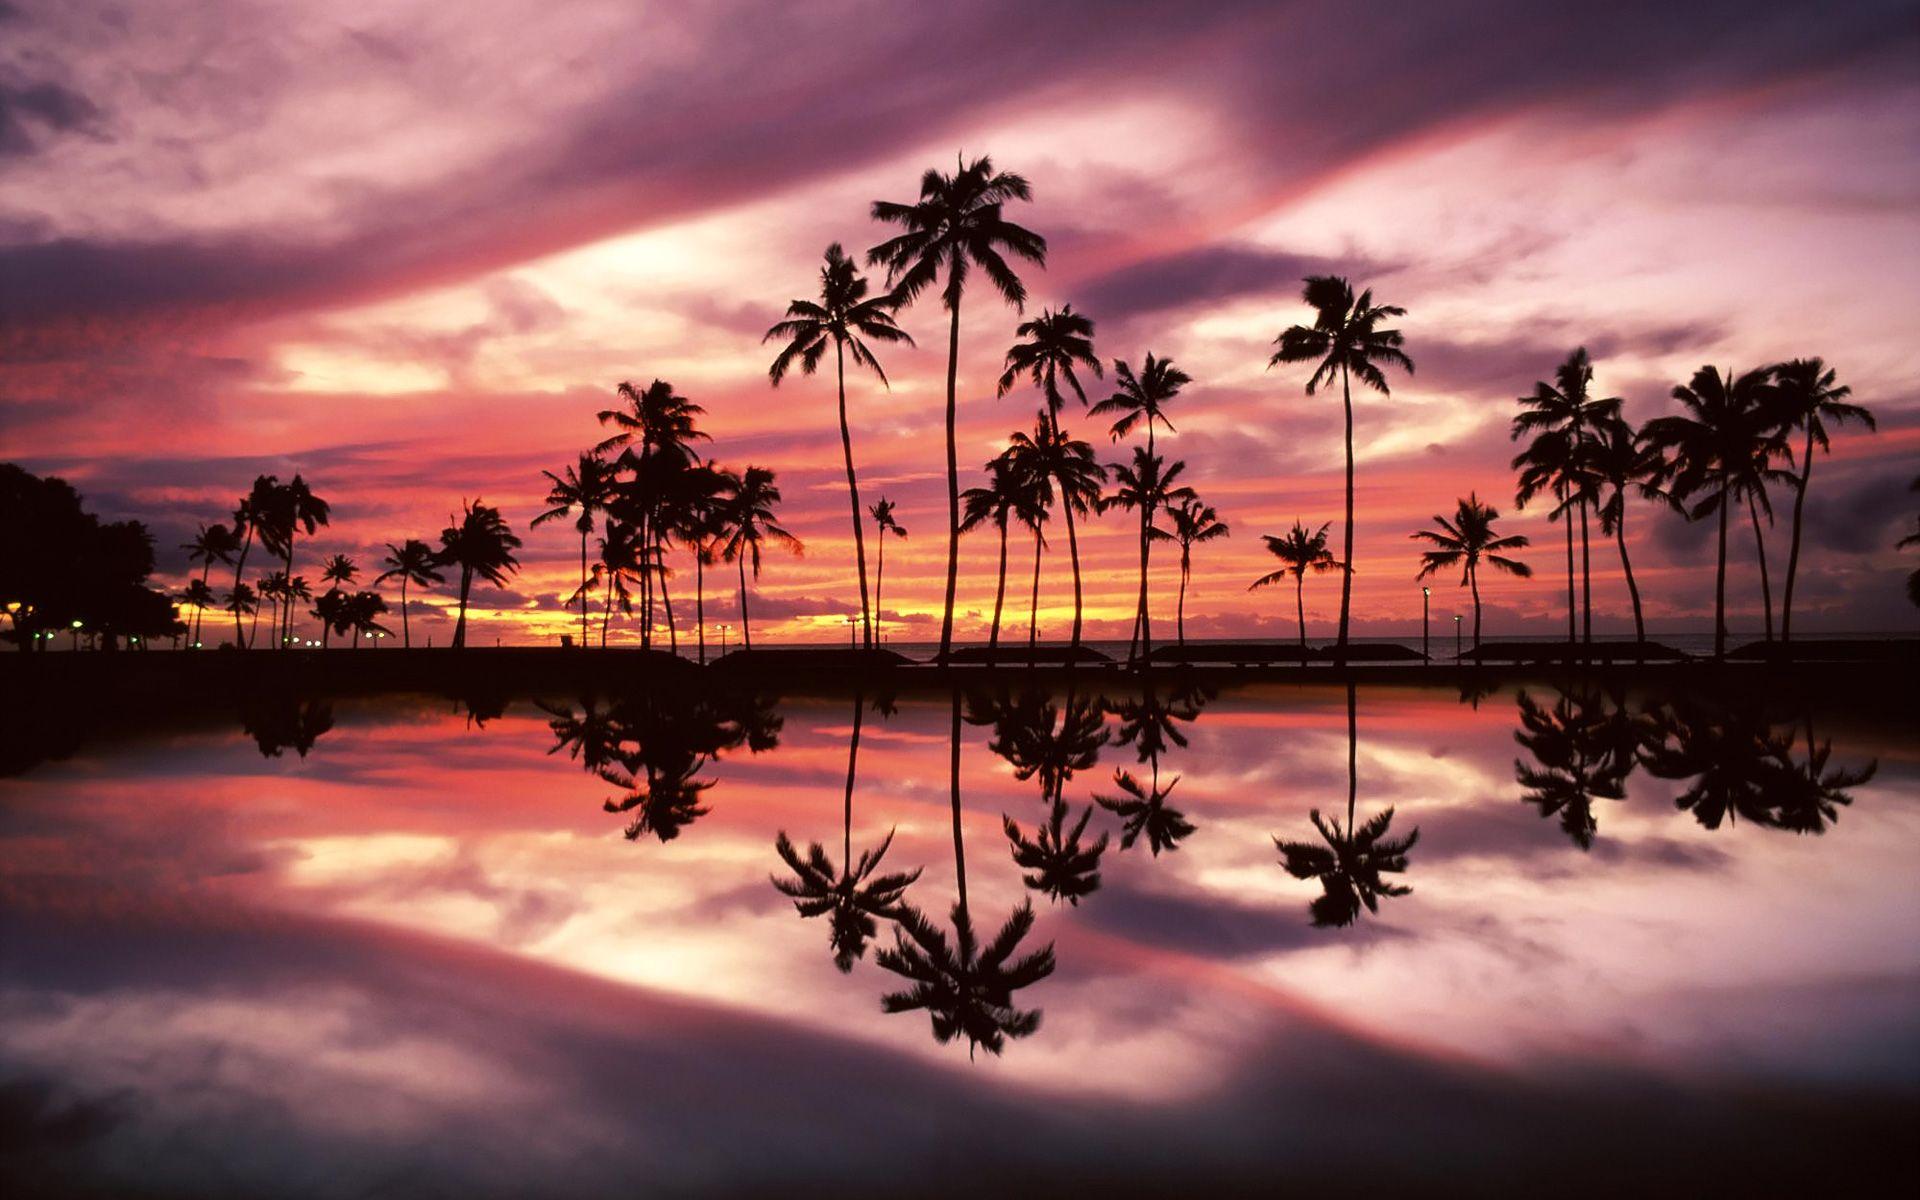 Sunset over the Ala Moana Beach Park, Honolulu, Oahu, Hawaii